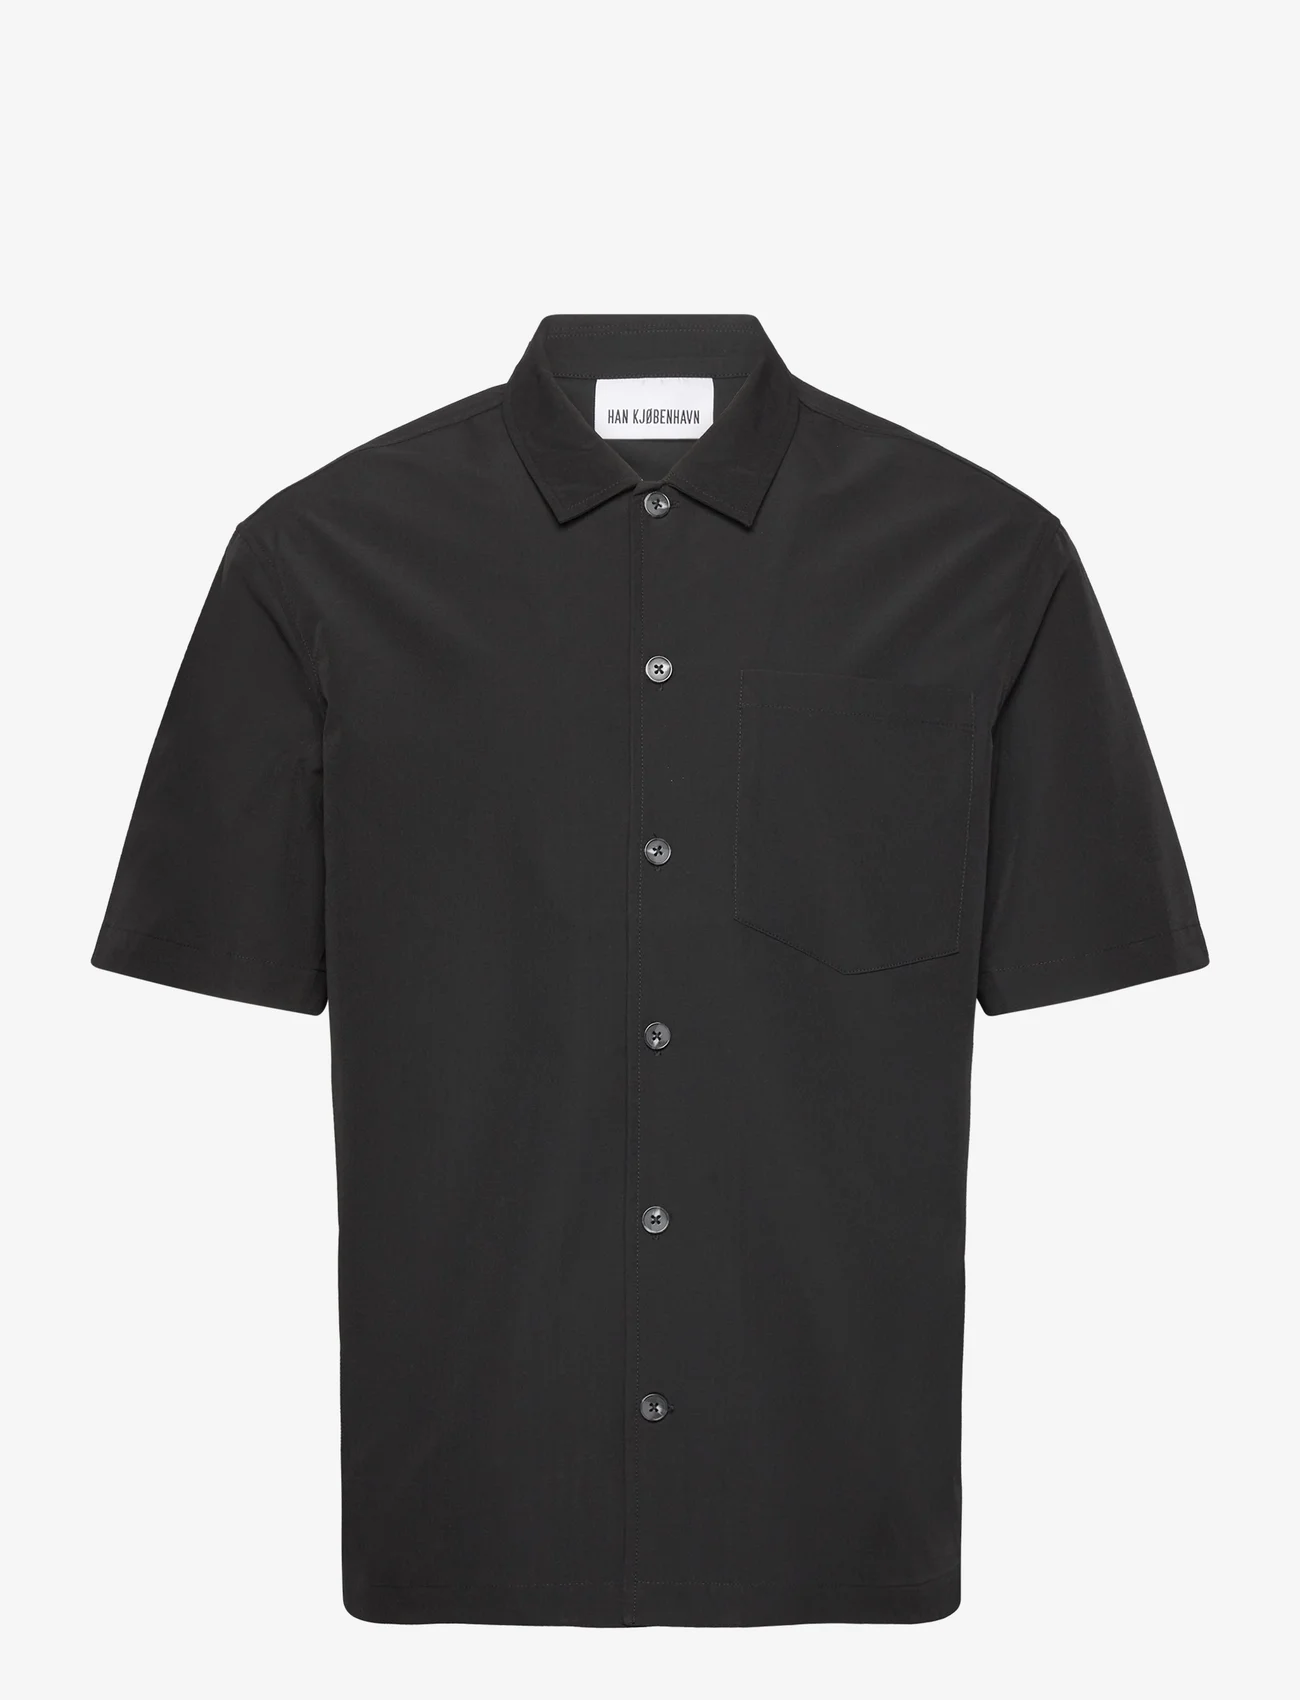 HAN Kjøbenhavn - Ripstop Summer Shirt - laisvalaikio marškiniai - black - 0